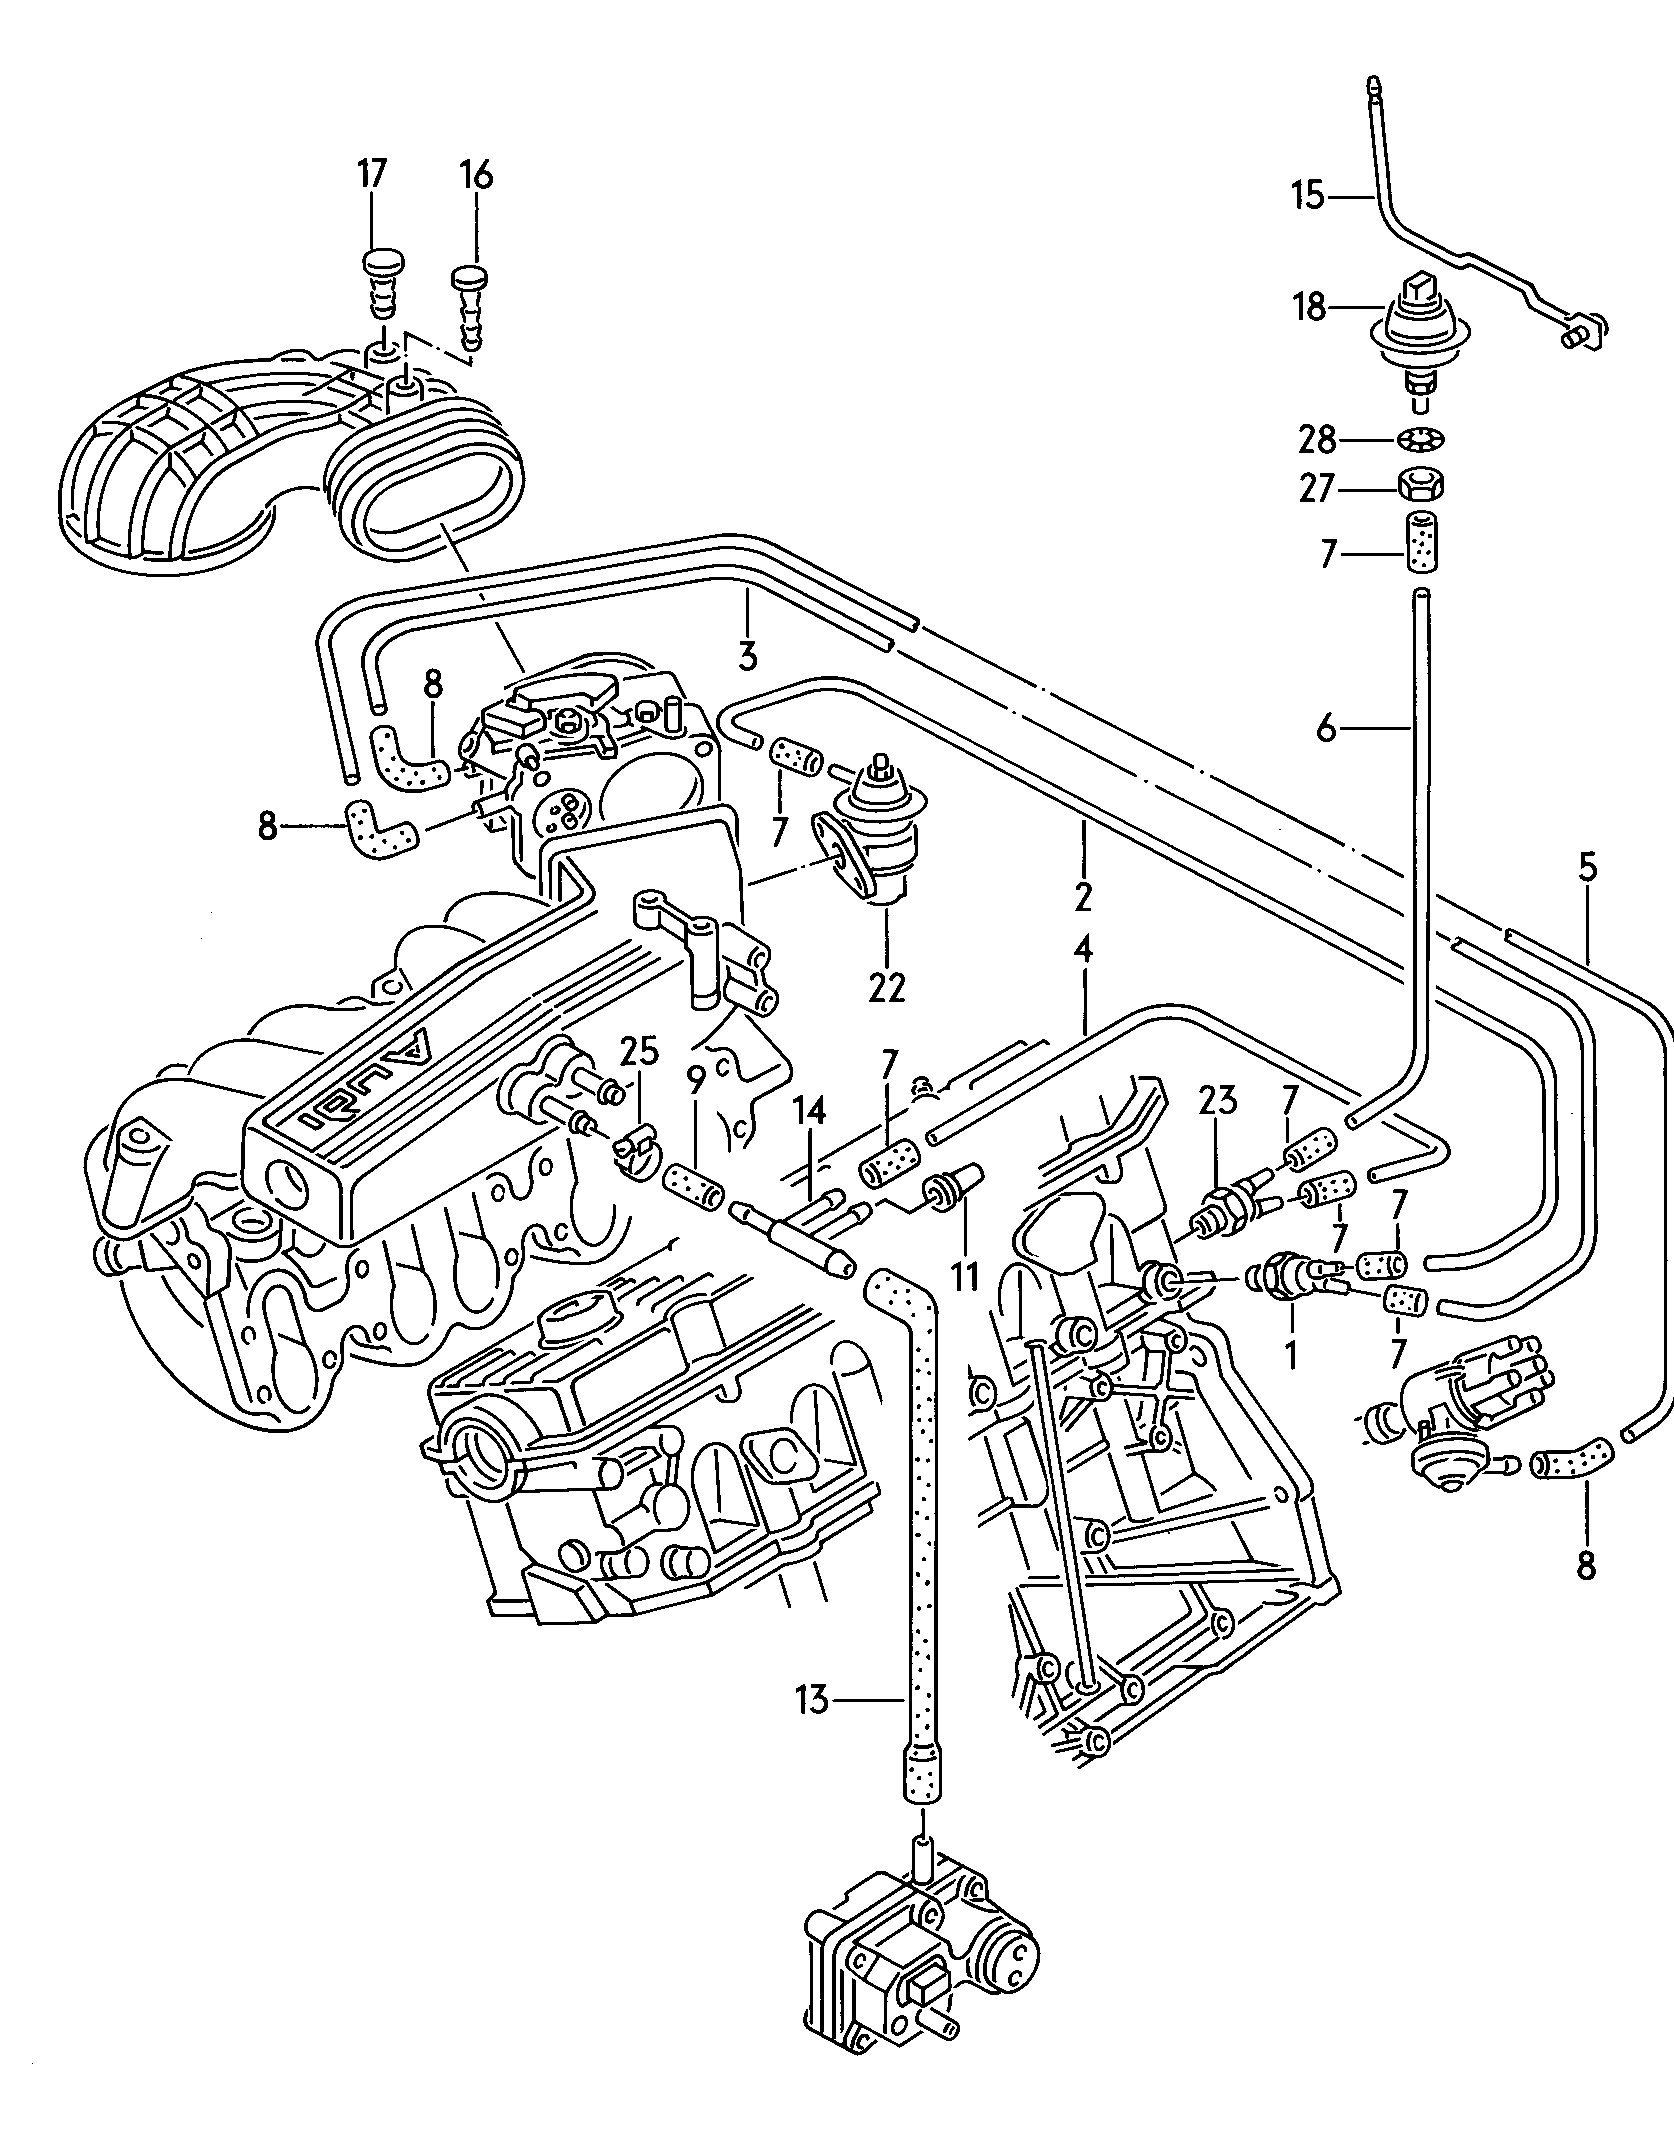 instalacja podcisnieniadla pojazdów bez<br>katalizatora 2,0 l - Audi 80/90/Avant - a80